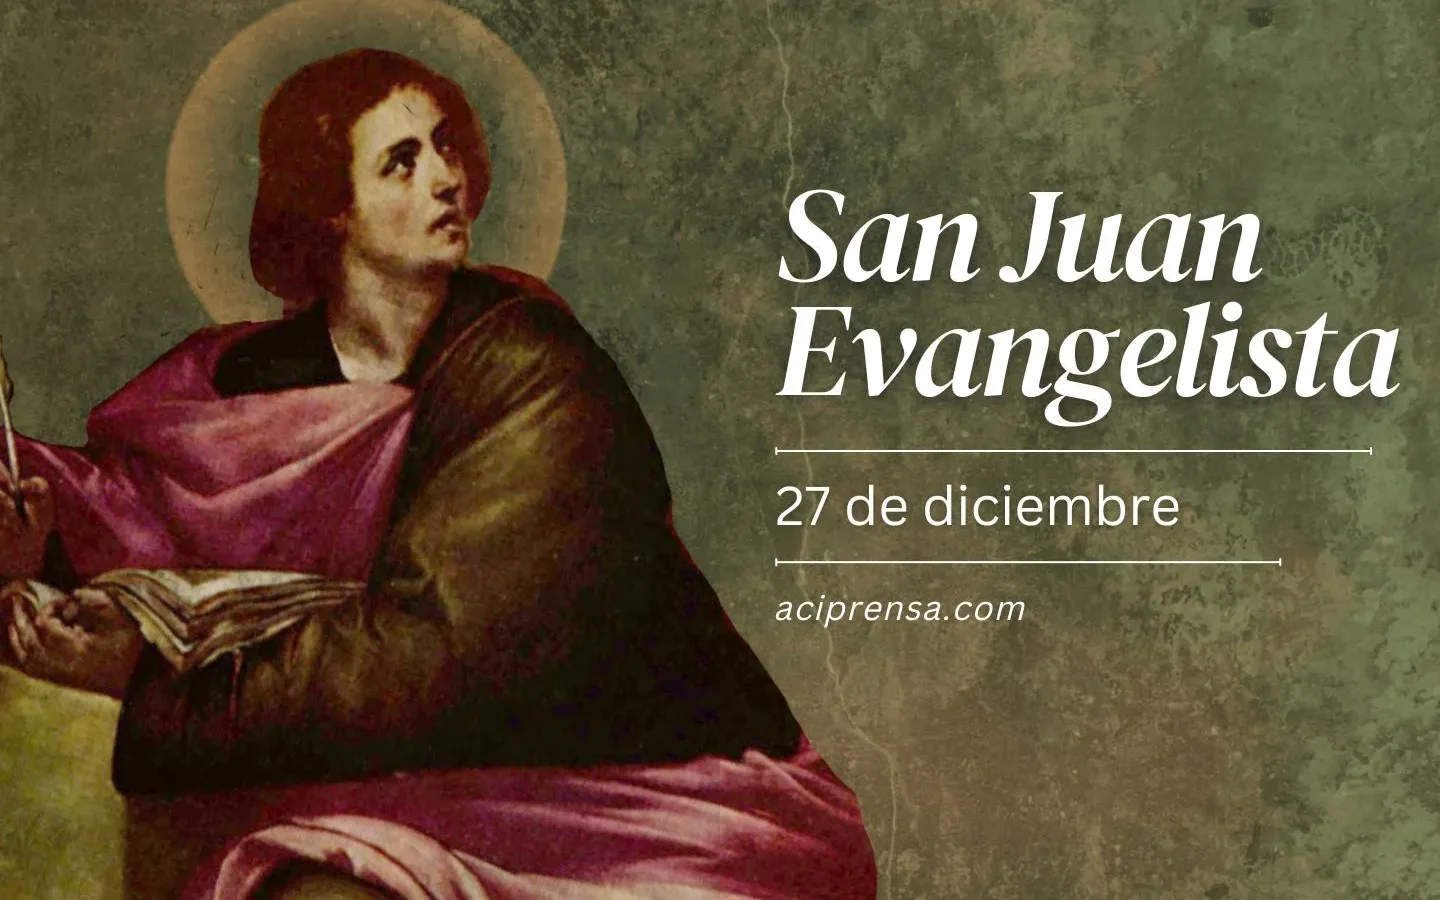 El santoral de San Juan: fechas y celebraciones relevantes.